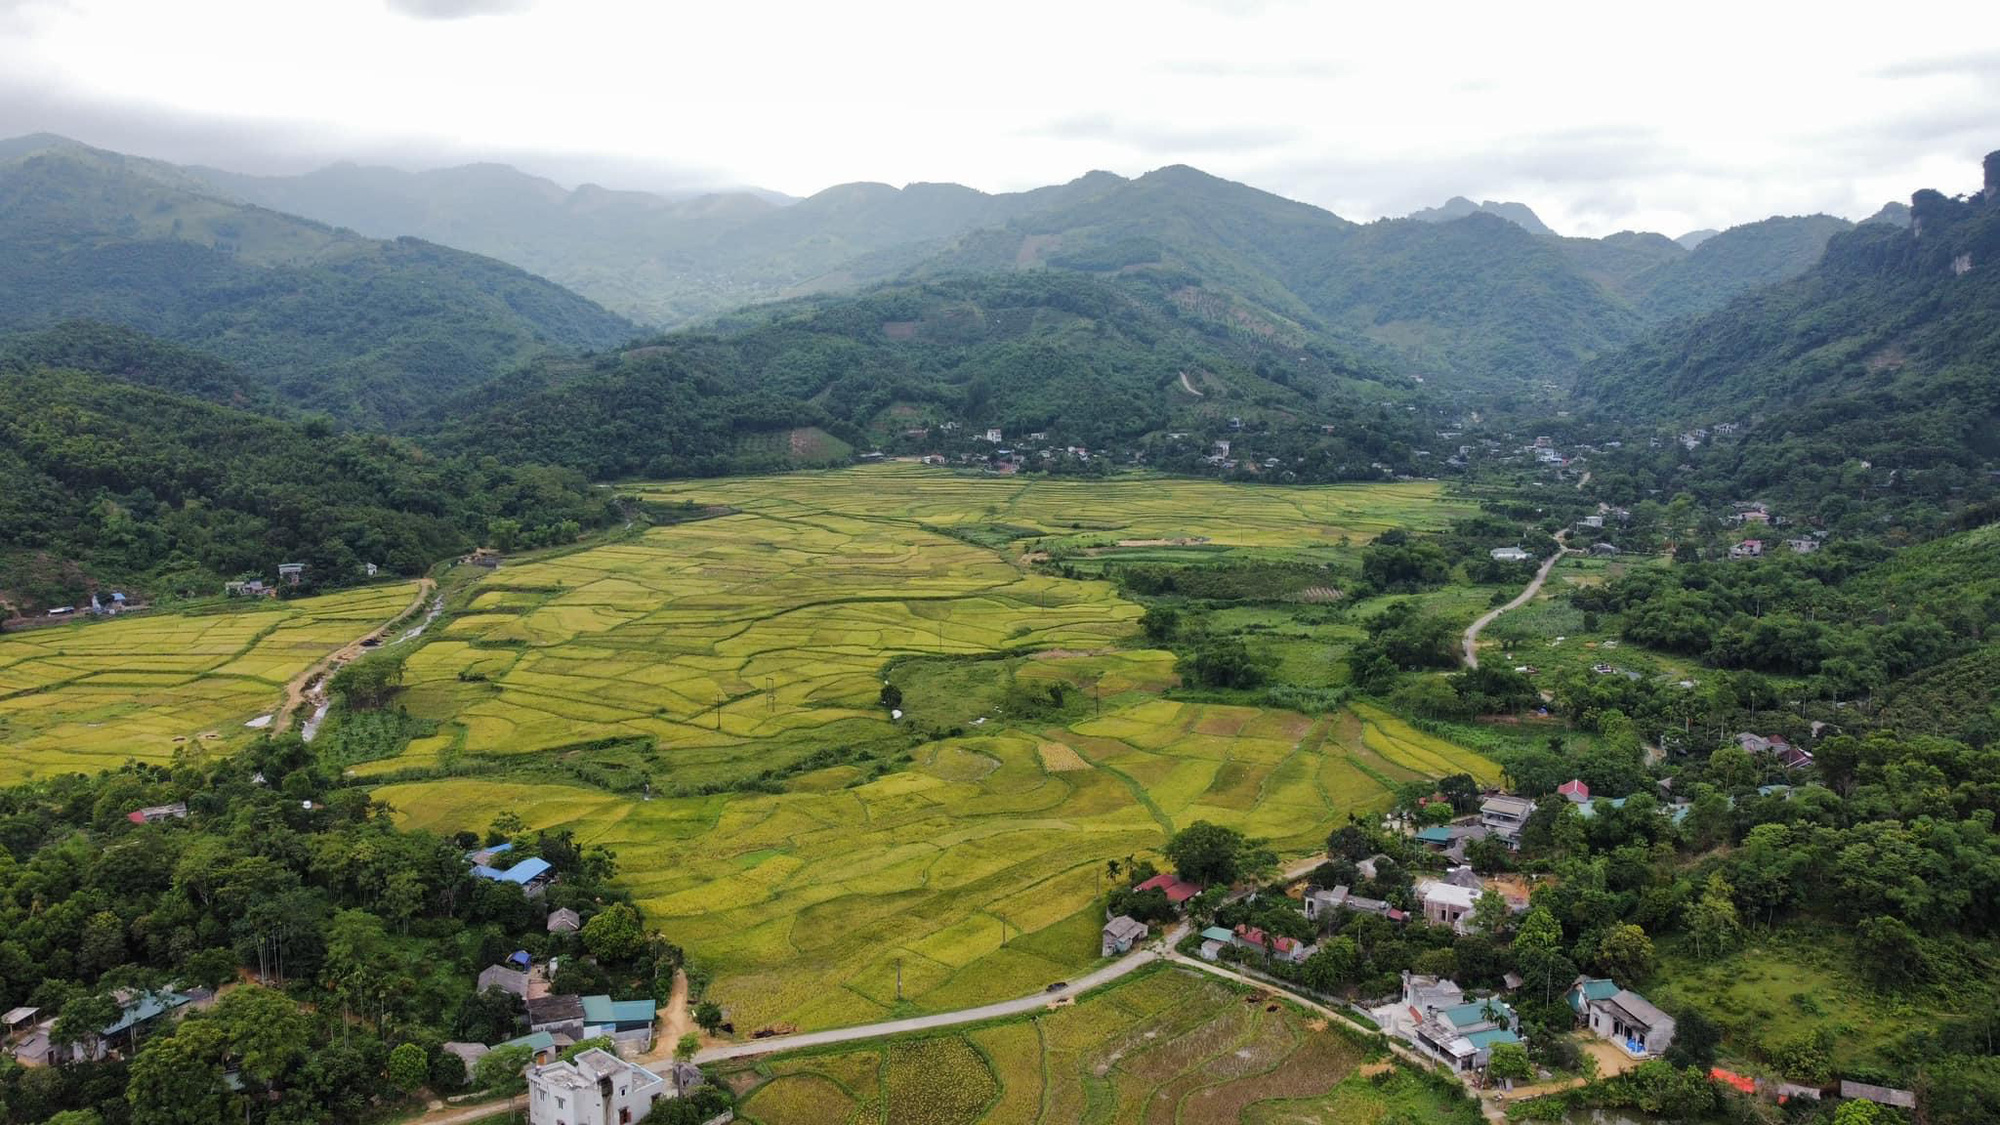 Nhiều người Hà Nội mua đất vệ tinh làm farmstay, homestay nghỉ dưỡng cuối tuần bỗng dưng thành nhà đầu tư thắng lớn nhờ giá đất tăng cao - Ảnh 1.